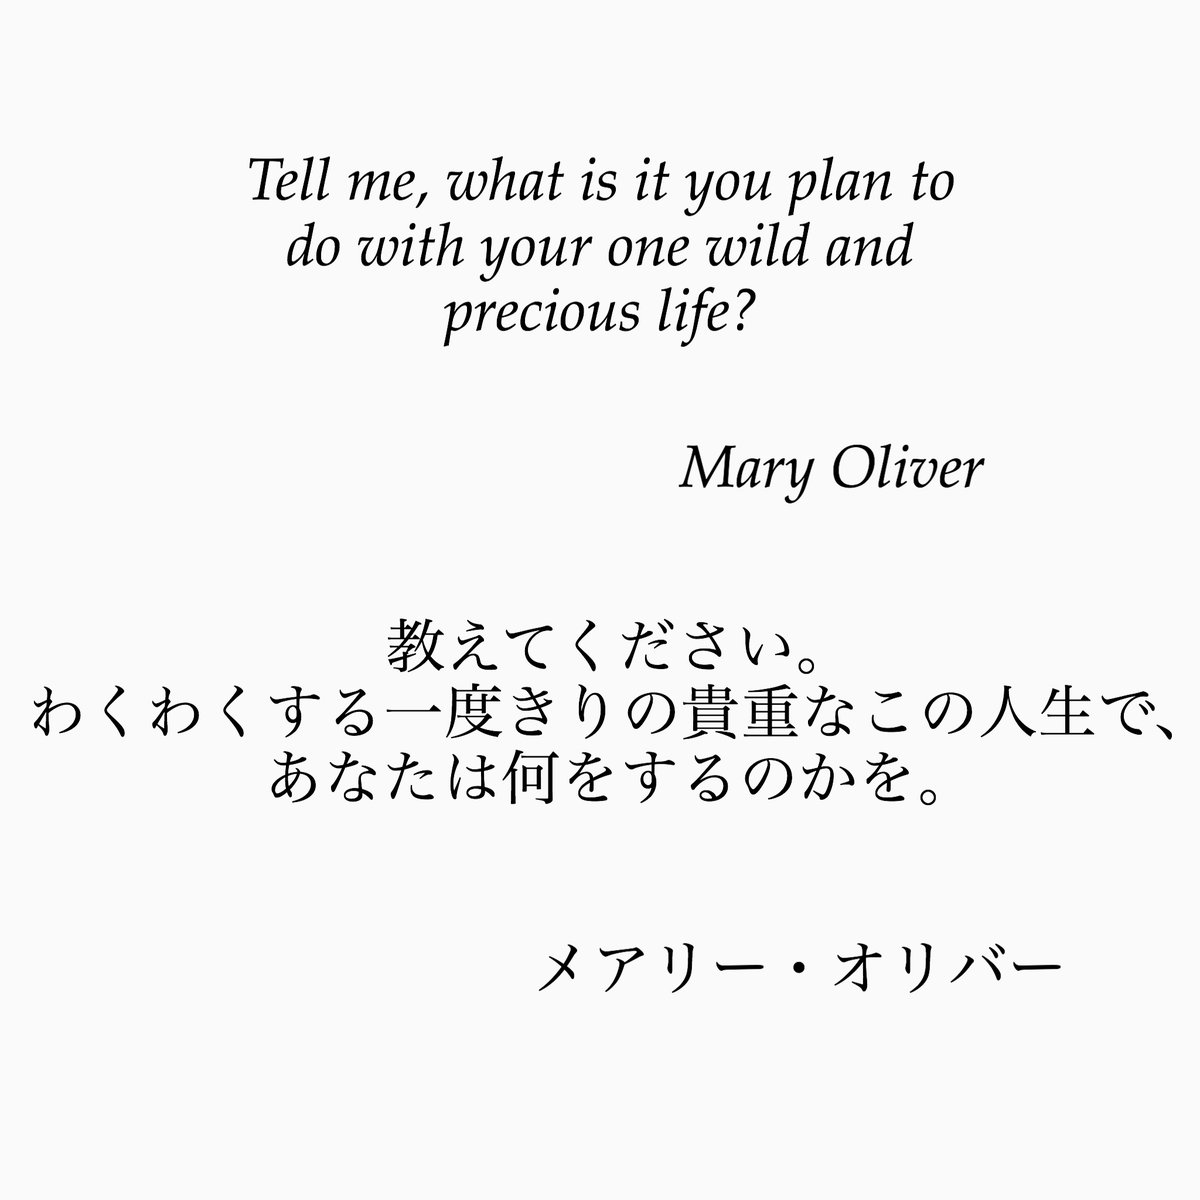 旧ゆったり名言書写 En Twitter No 45 本日の名言は 米国の詩人メアリー オリバーの言葉です この言葉は ハーバード大学の卒業式でも引用されました ゆったり名言書写